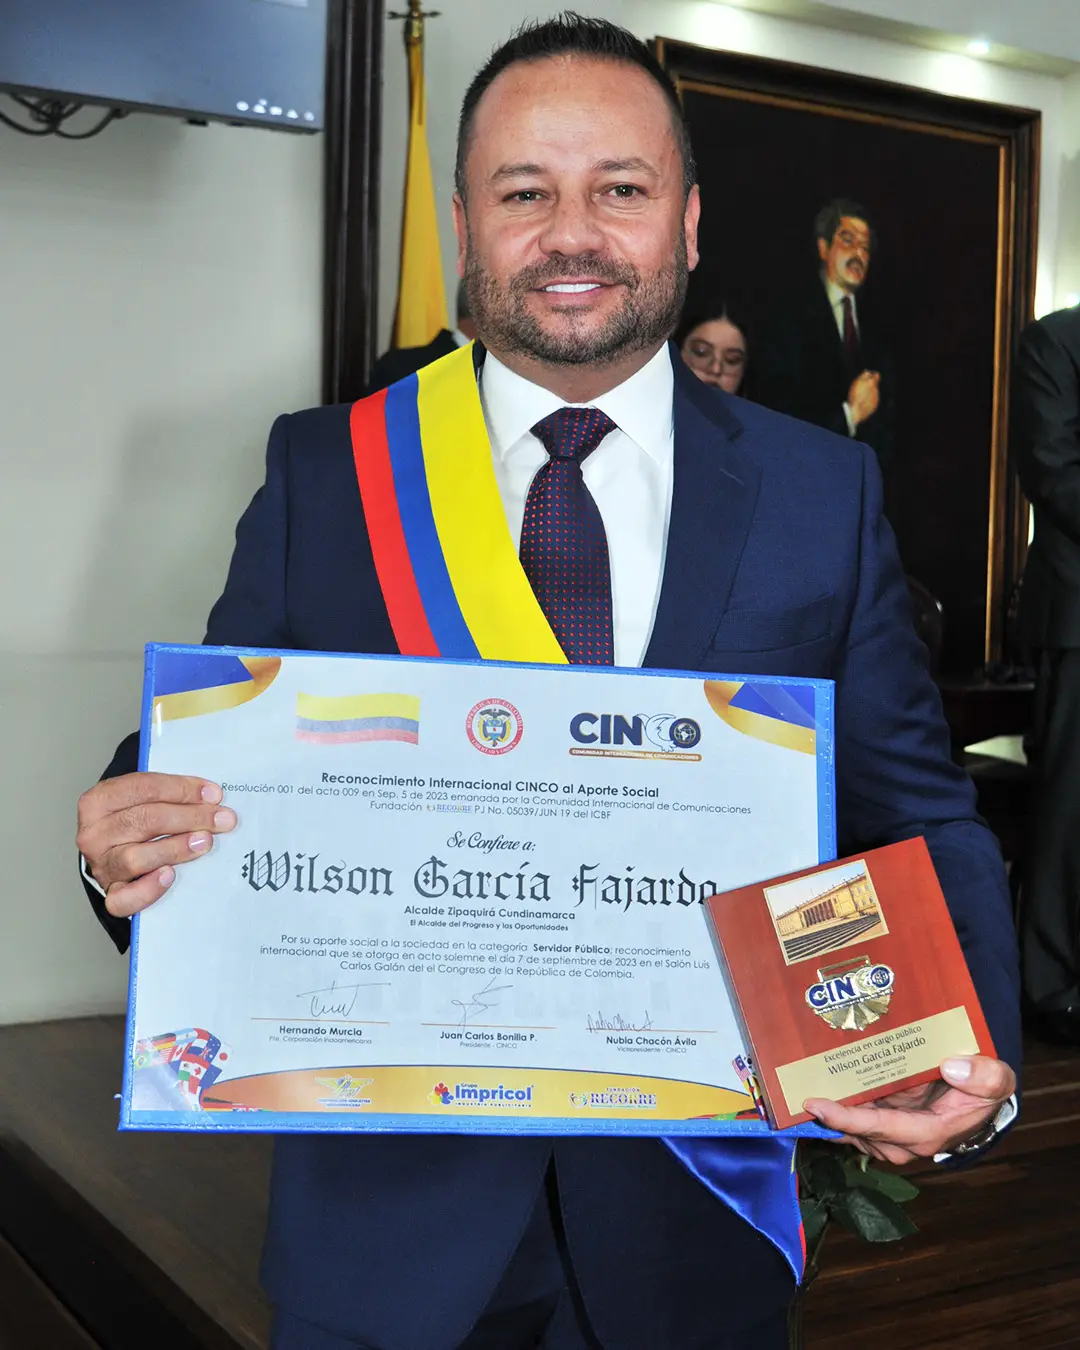 WILSON GARCÍA